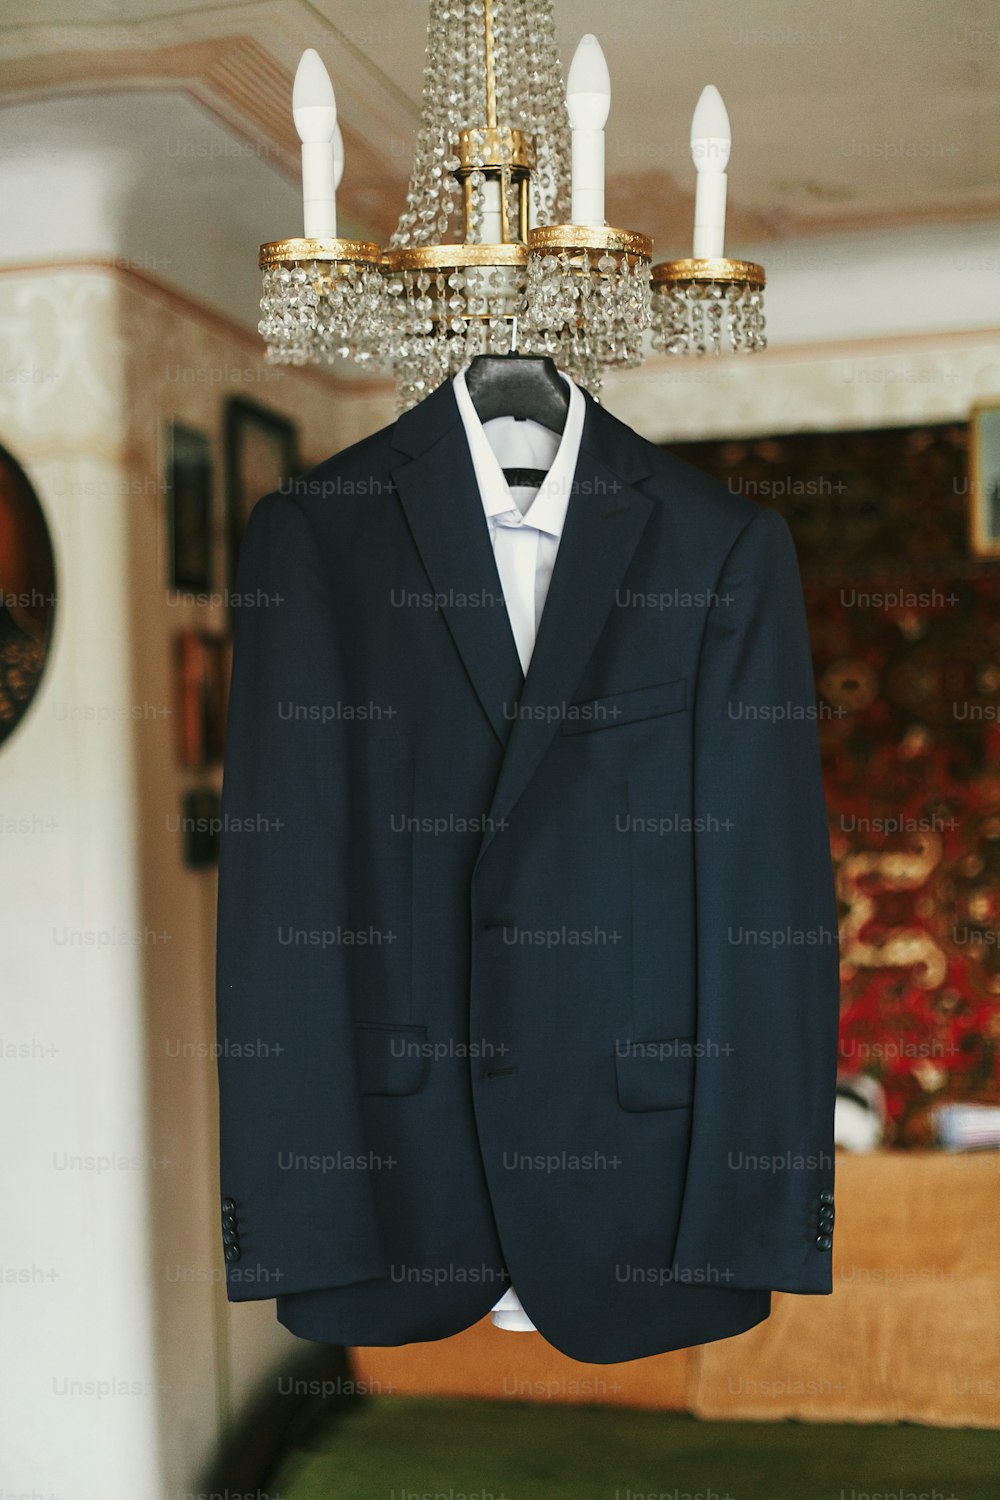 고급 샹들리에에 옷걸이에 흰색 셔츠와 나비 넥타이가 달린 세련된 검은 색 정장. 결혼식 전 아침 준비. 신랑 복장